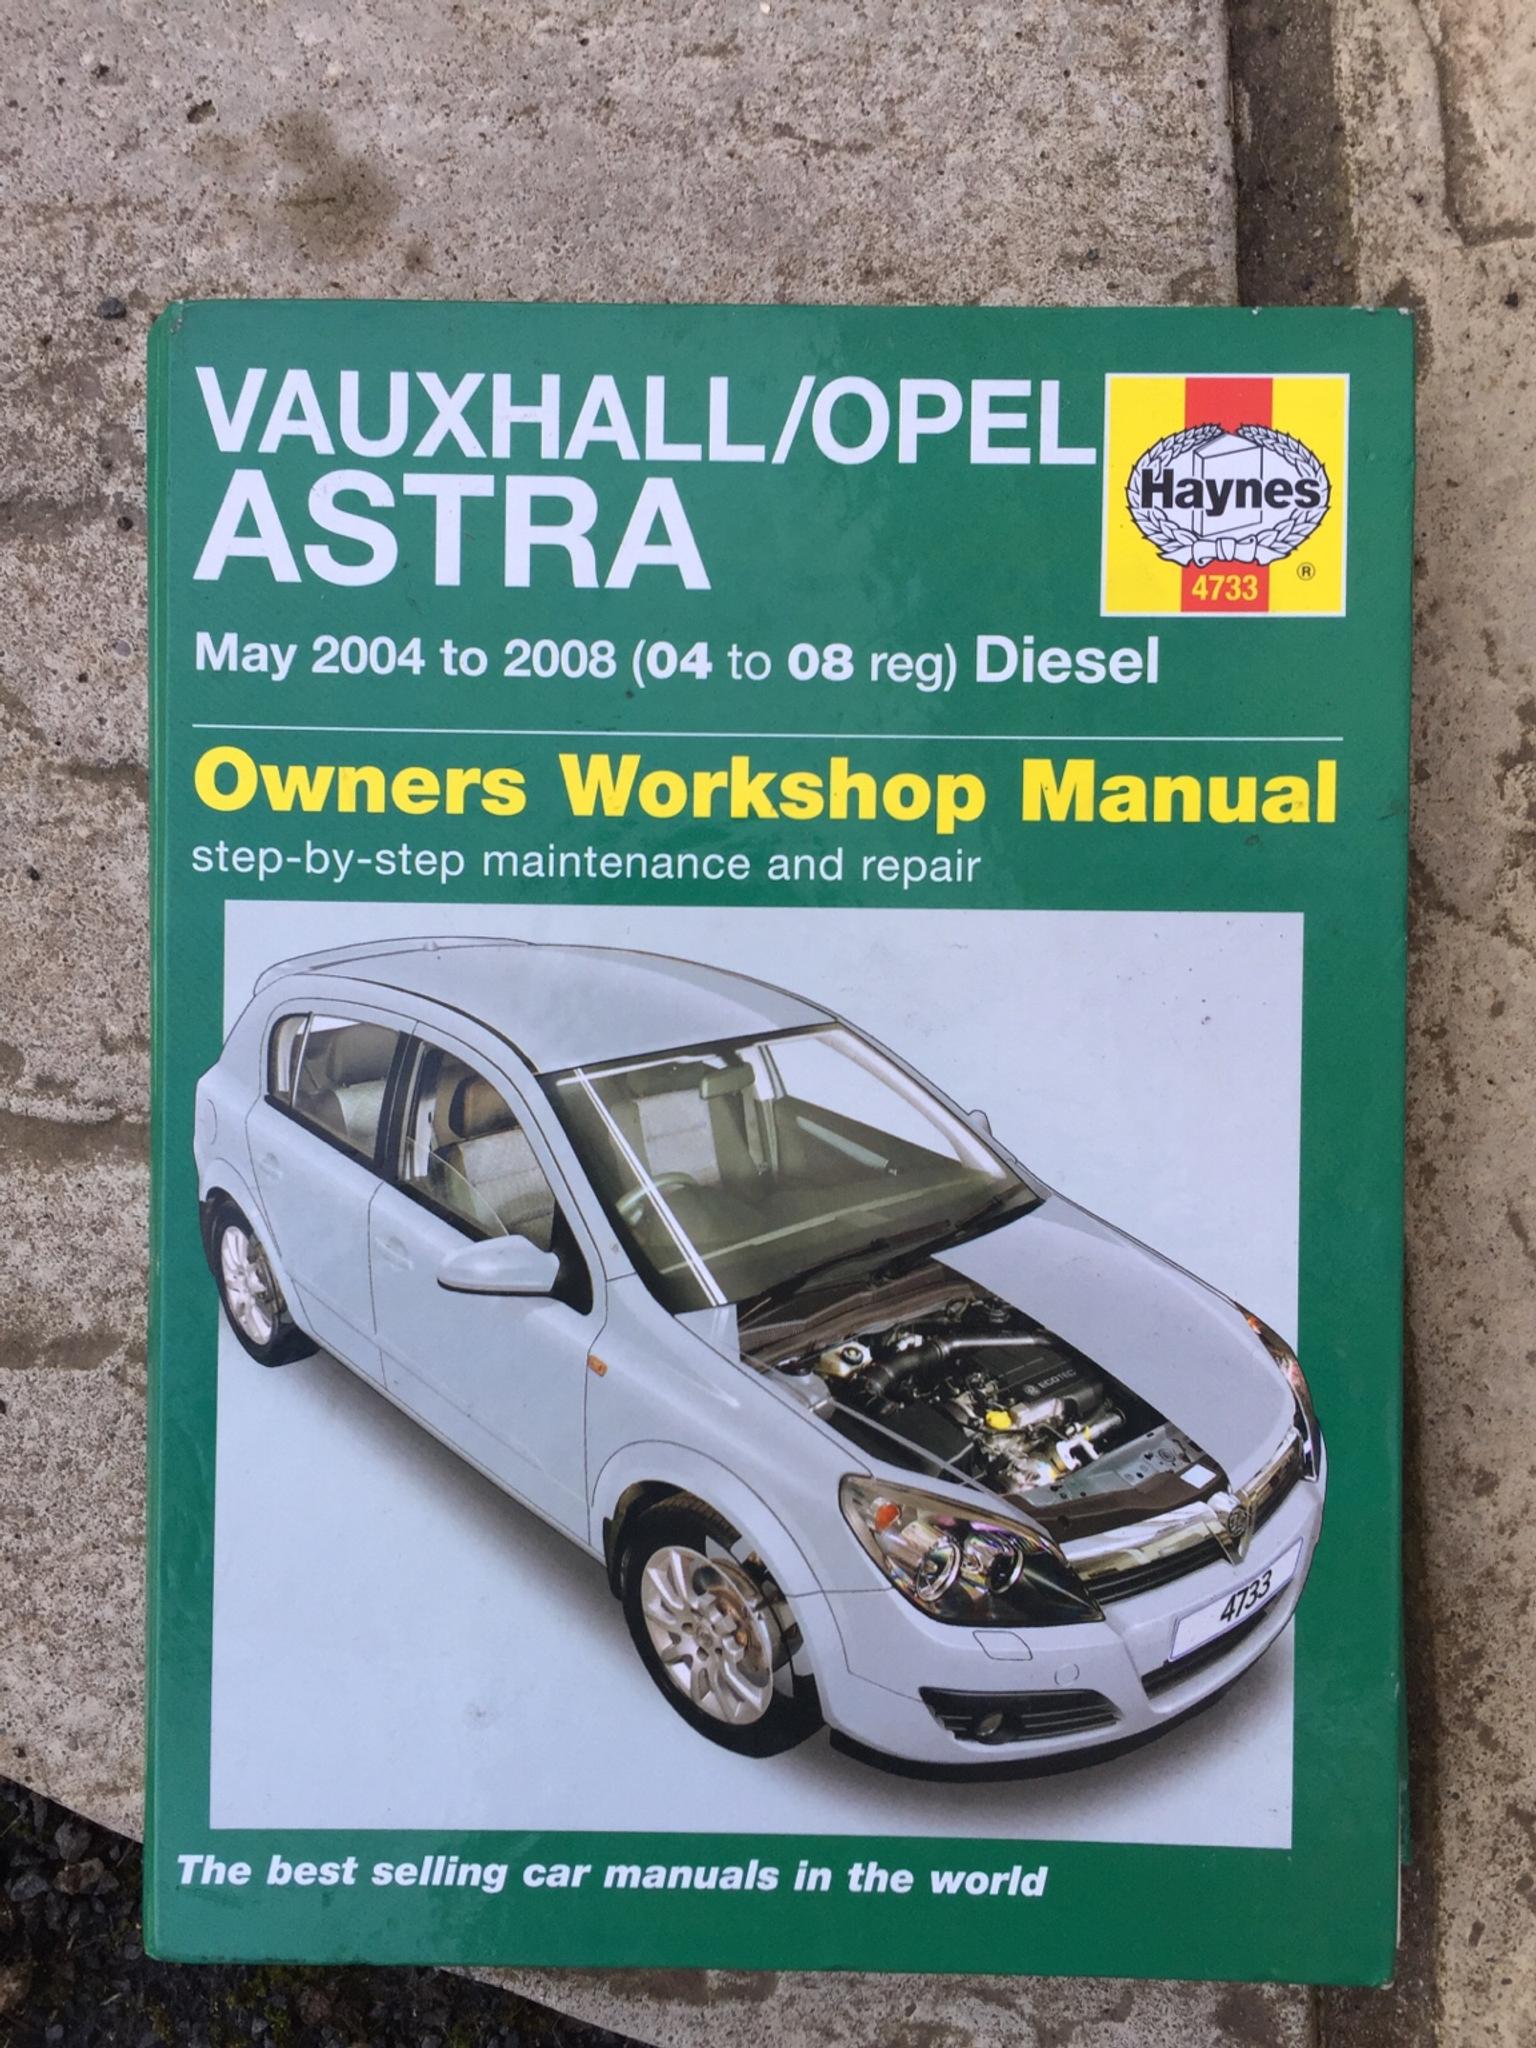 Haynes Workshop Manual Vauxhall Opel Astra Diesel 2004-2008 Service /& Repair